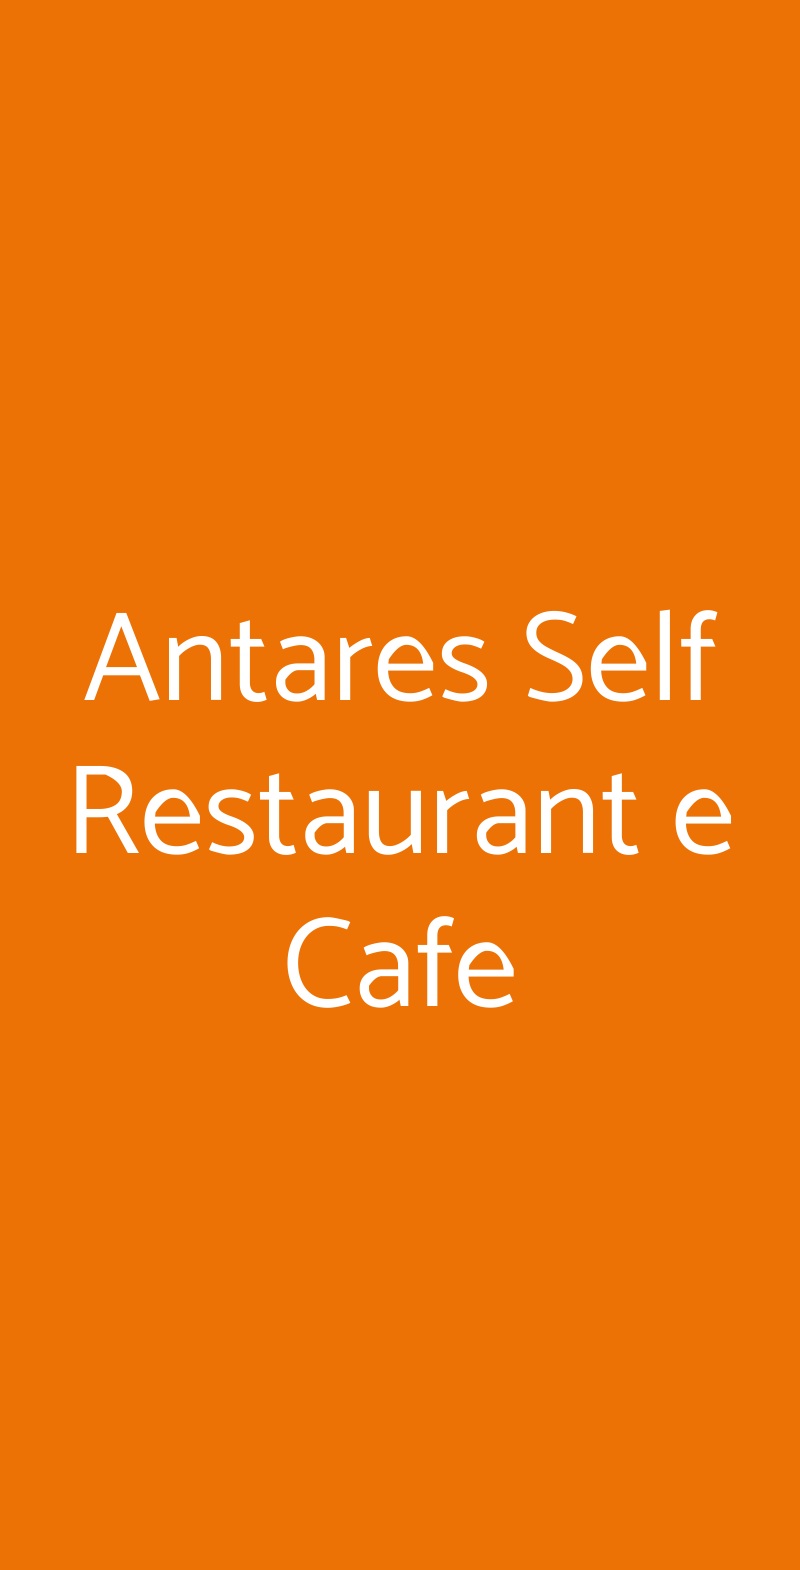 Antares Self Restaurant e Cafe Milano menù 1 pagina